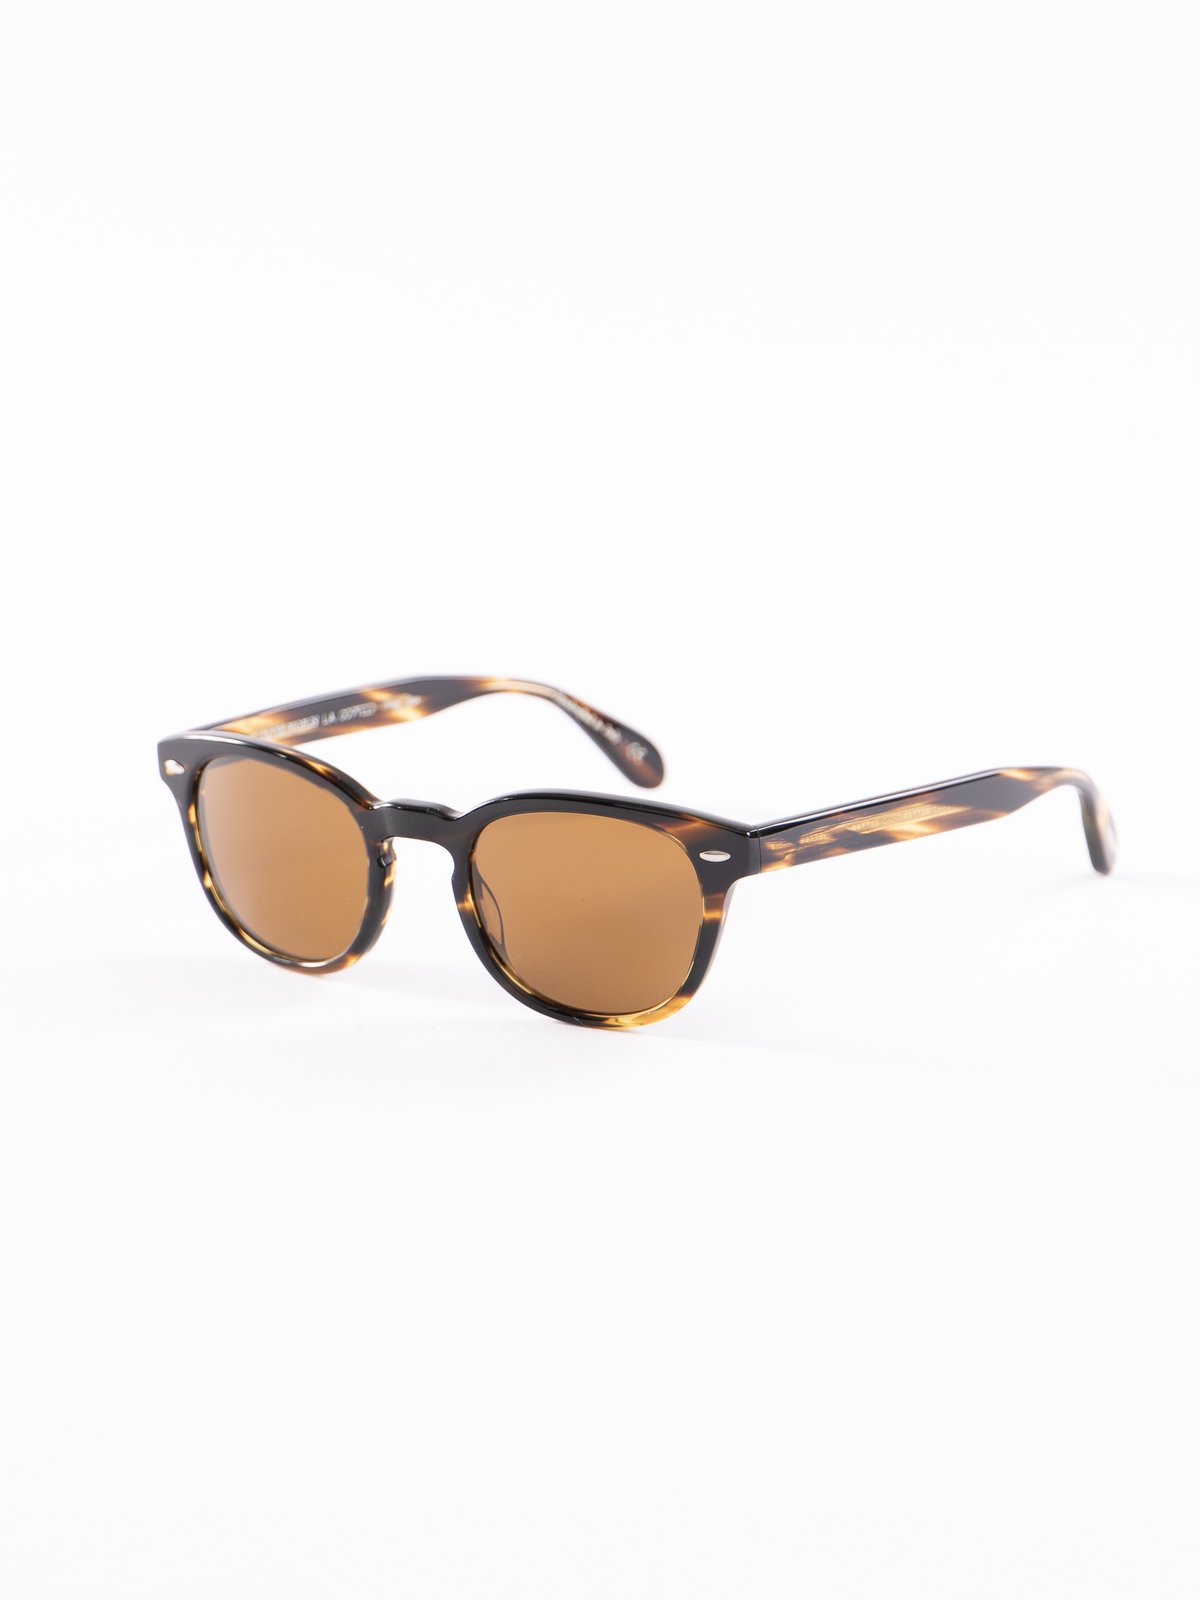 Cocobolo/Brown Sheldrake Sunglasses - Image 2